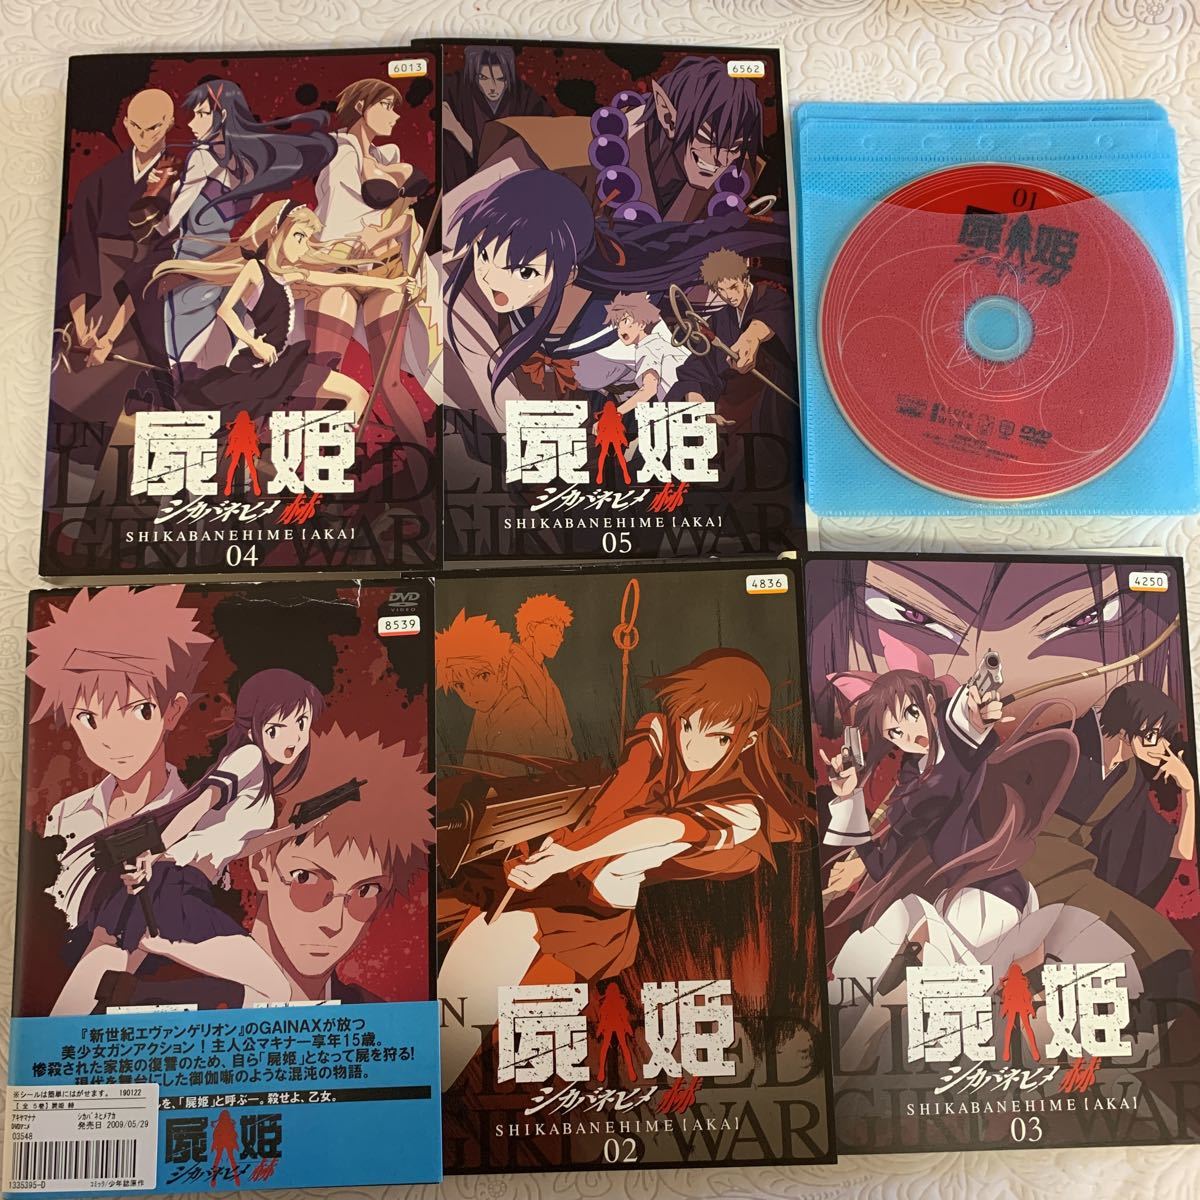 屍姫 赫 シカバネヒメ アカ 全5巻 レンタル版DVD | www.terrabrasilis